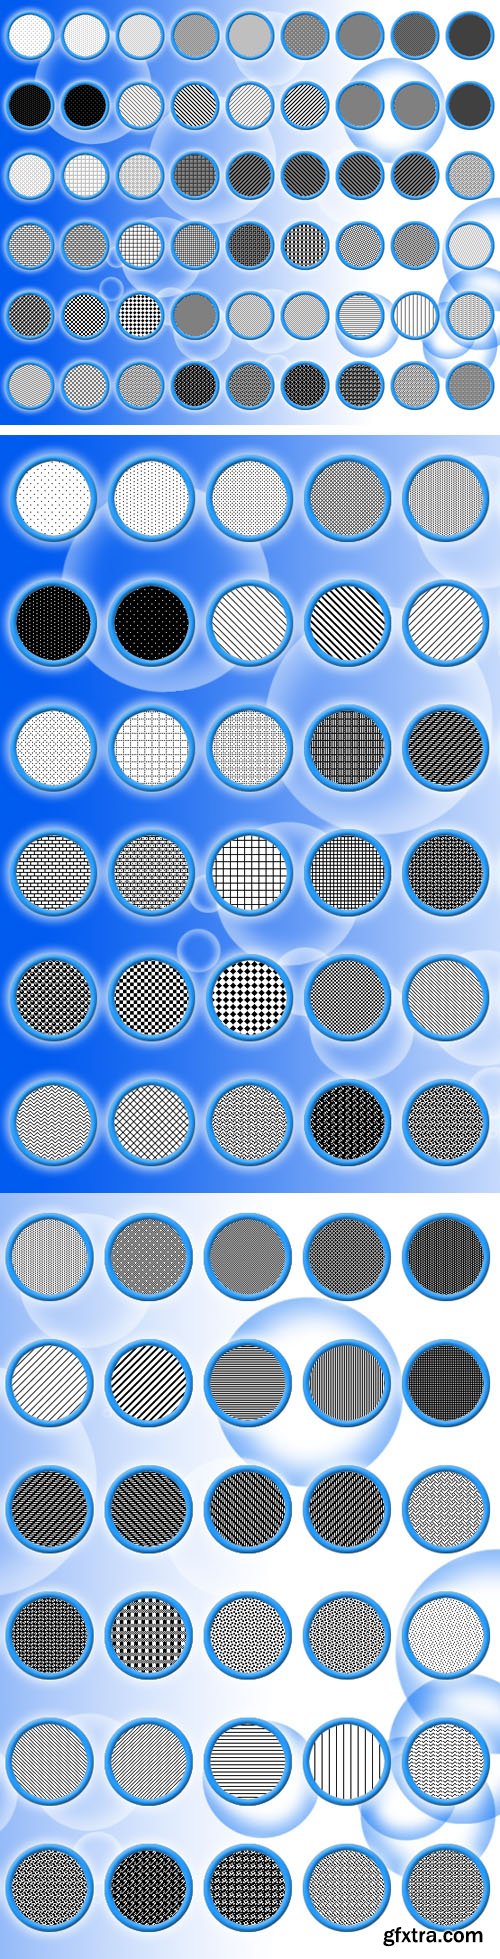 Pixel Pattern Pack - 54 Pixel Patterns